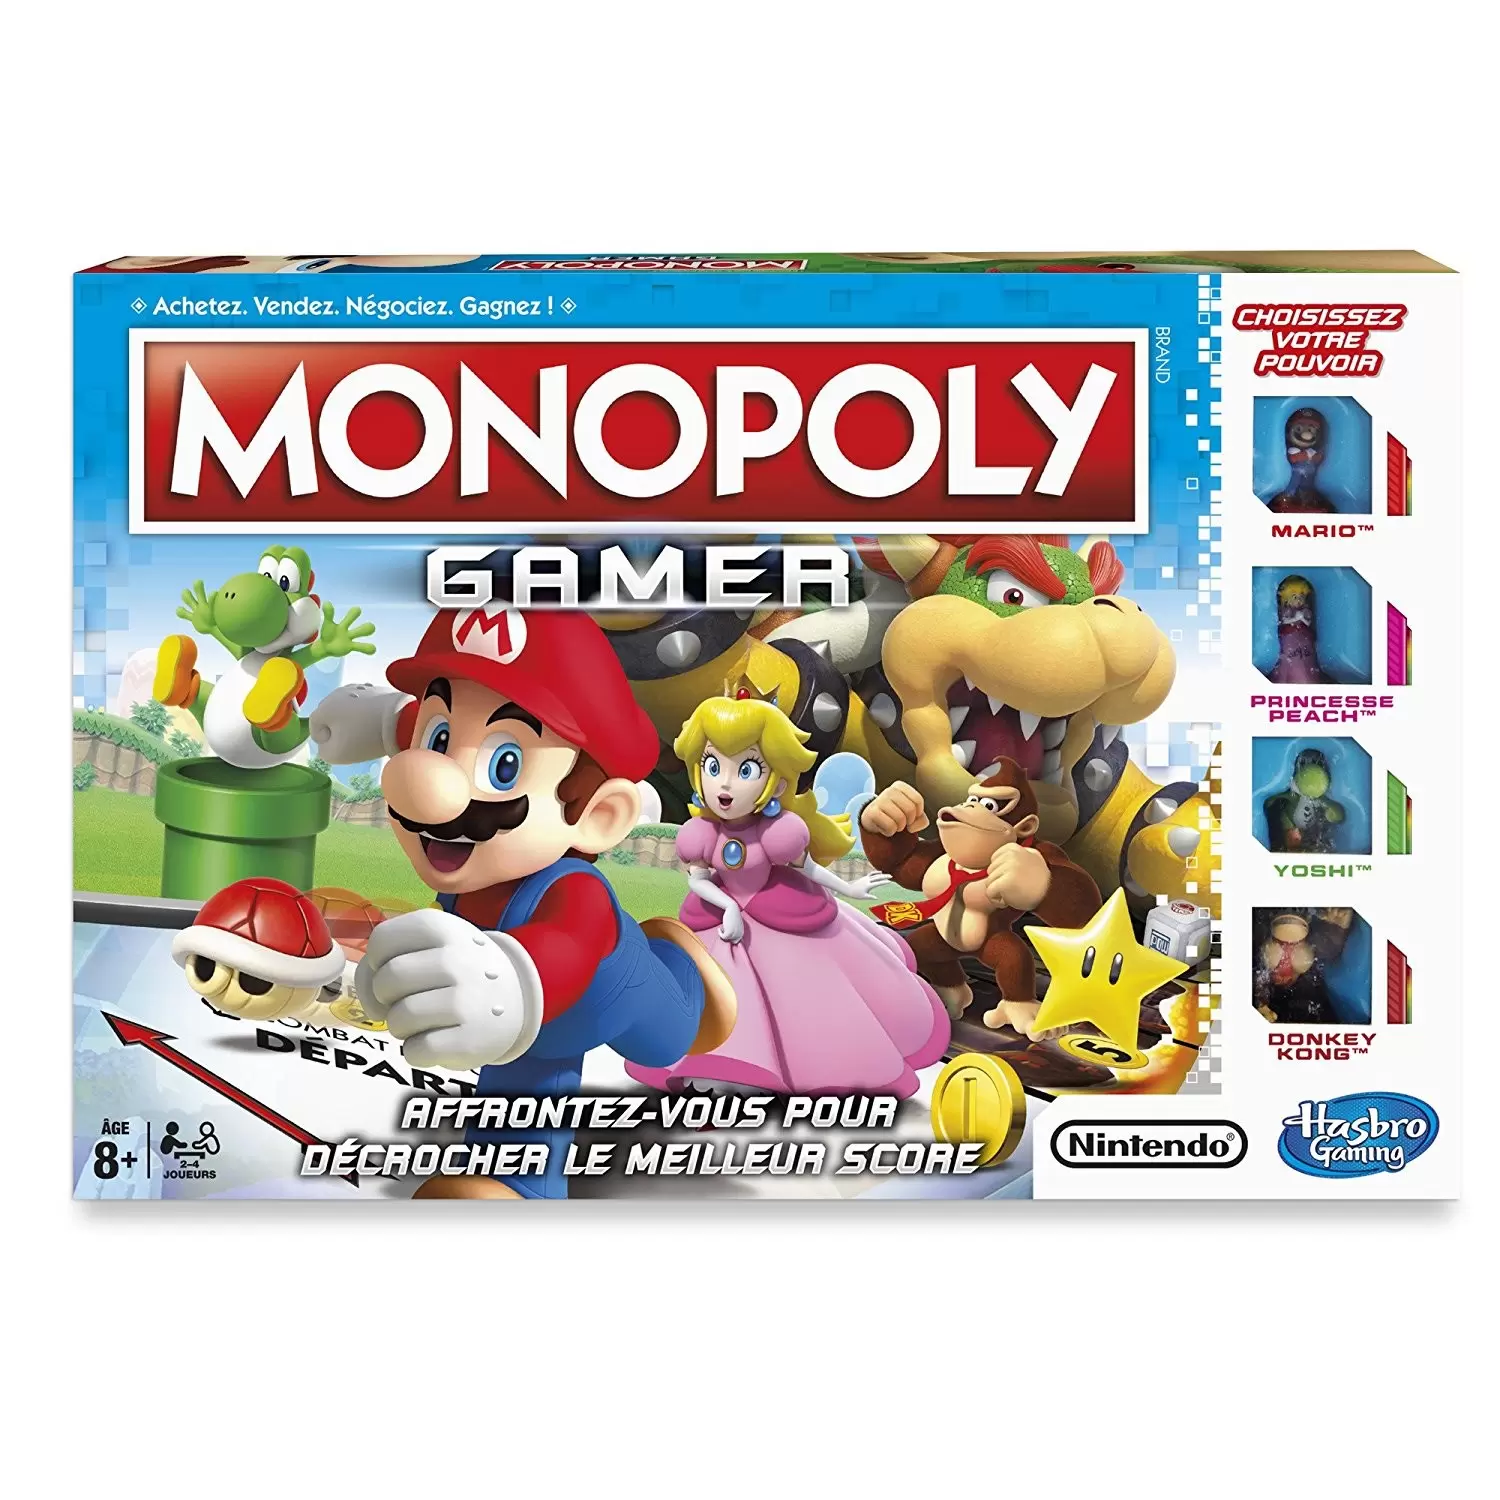 Monopoly Jeux vidéo - Monopoly Gamer